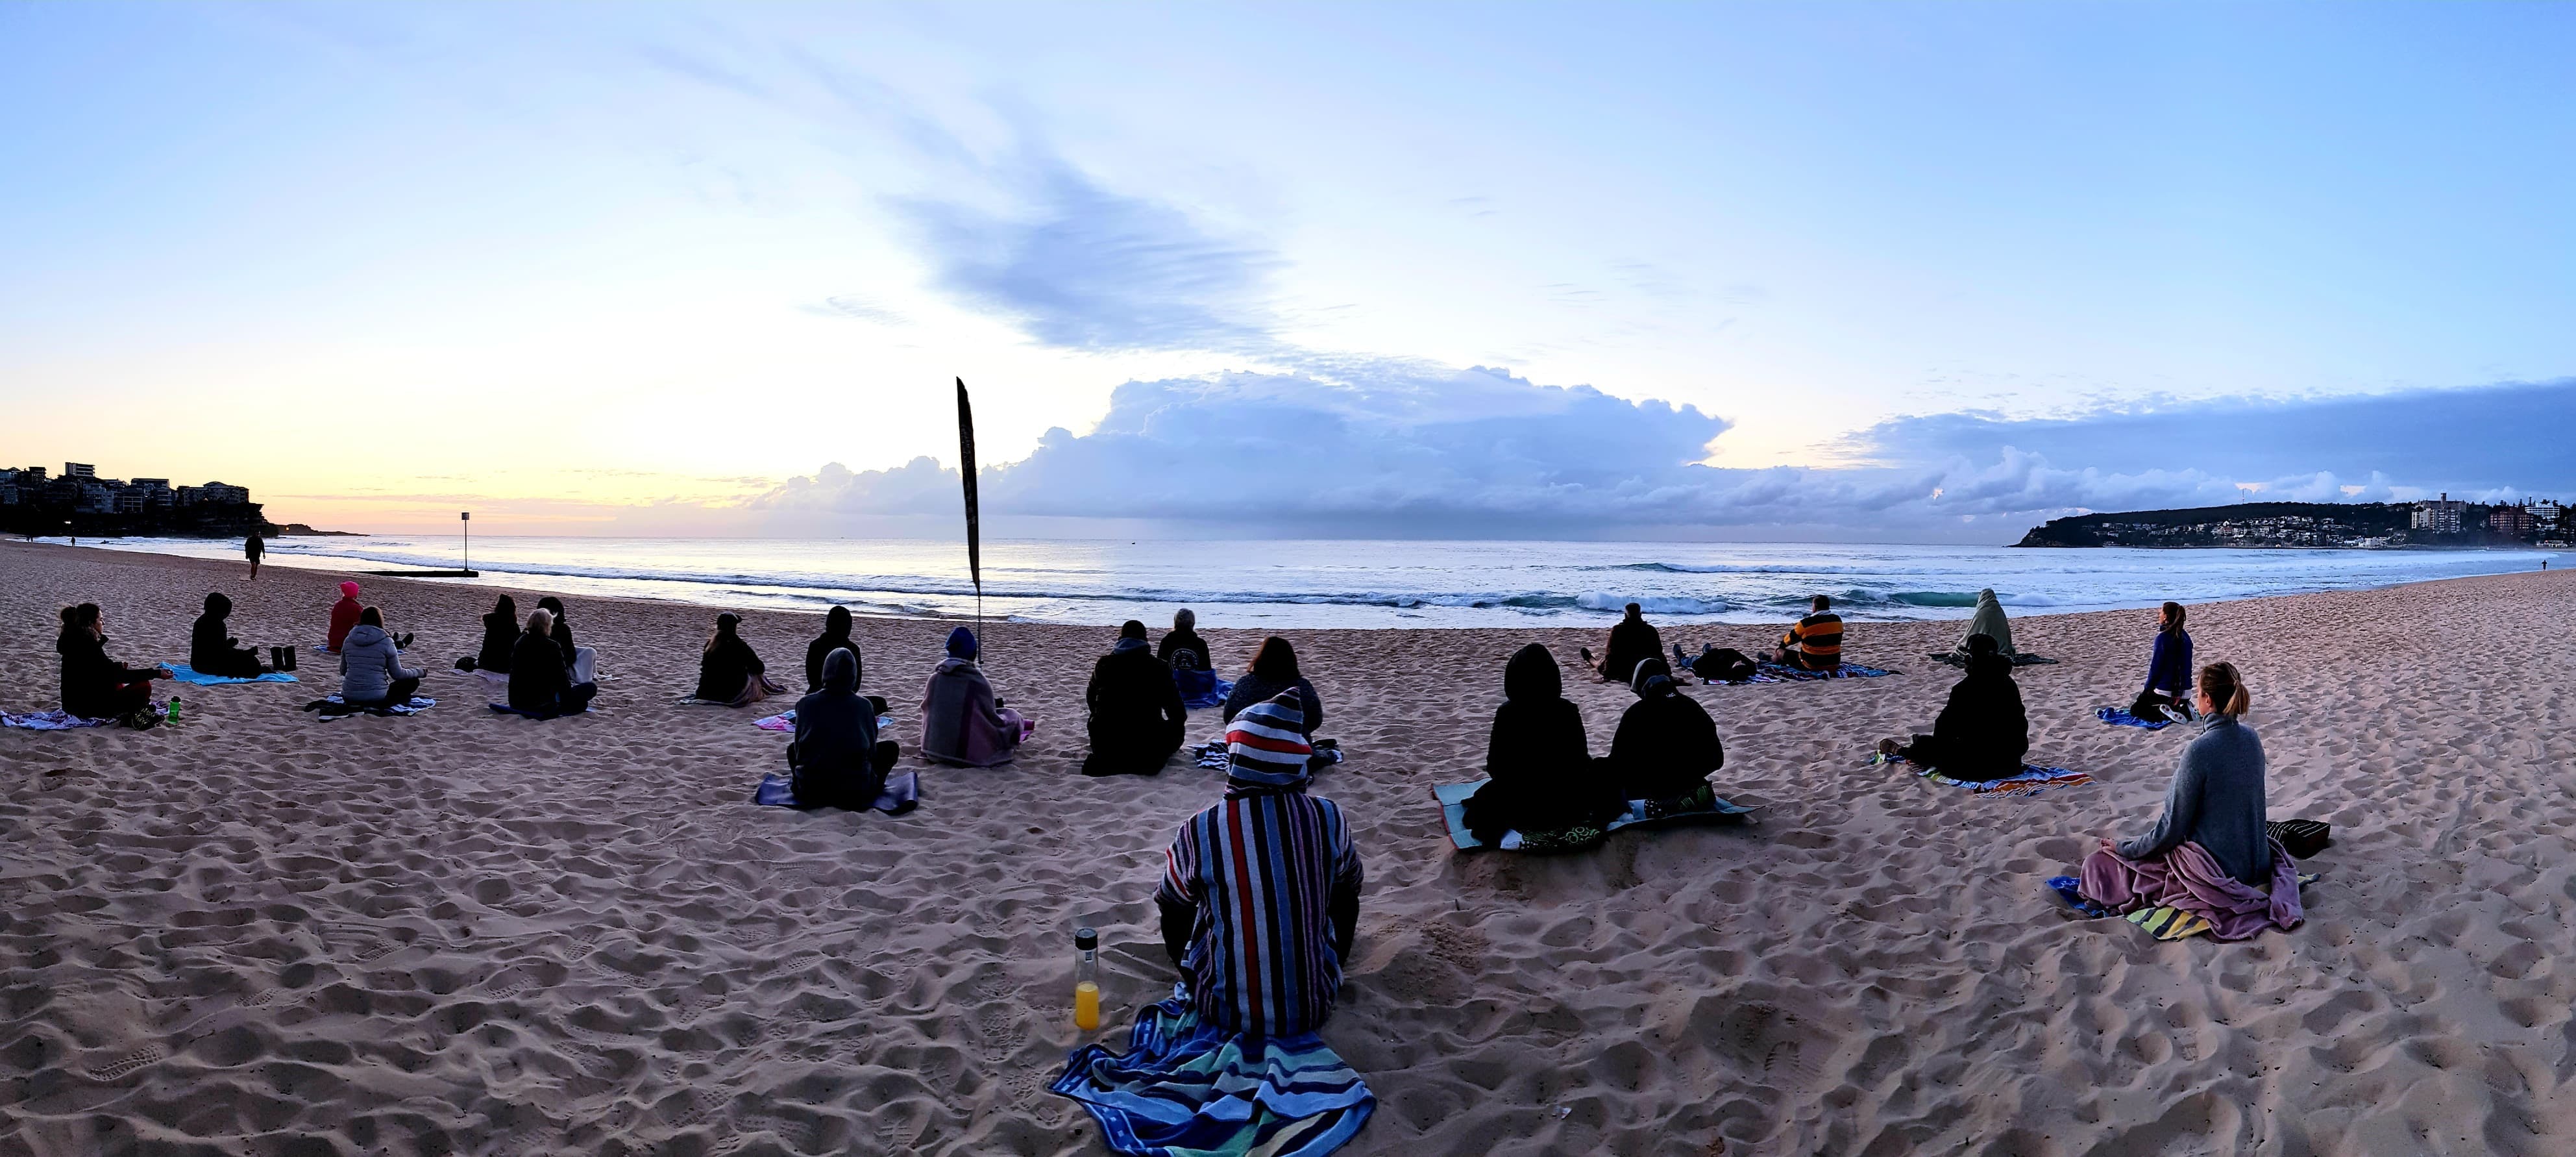 Making Meditation Mainstream Free Beach Meditation Sessions - Avalon Beach - Wagga Wagga Accommodation